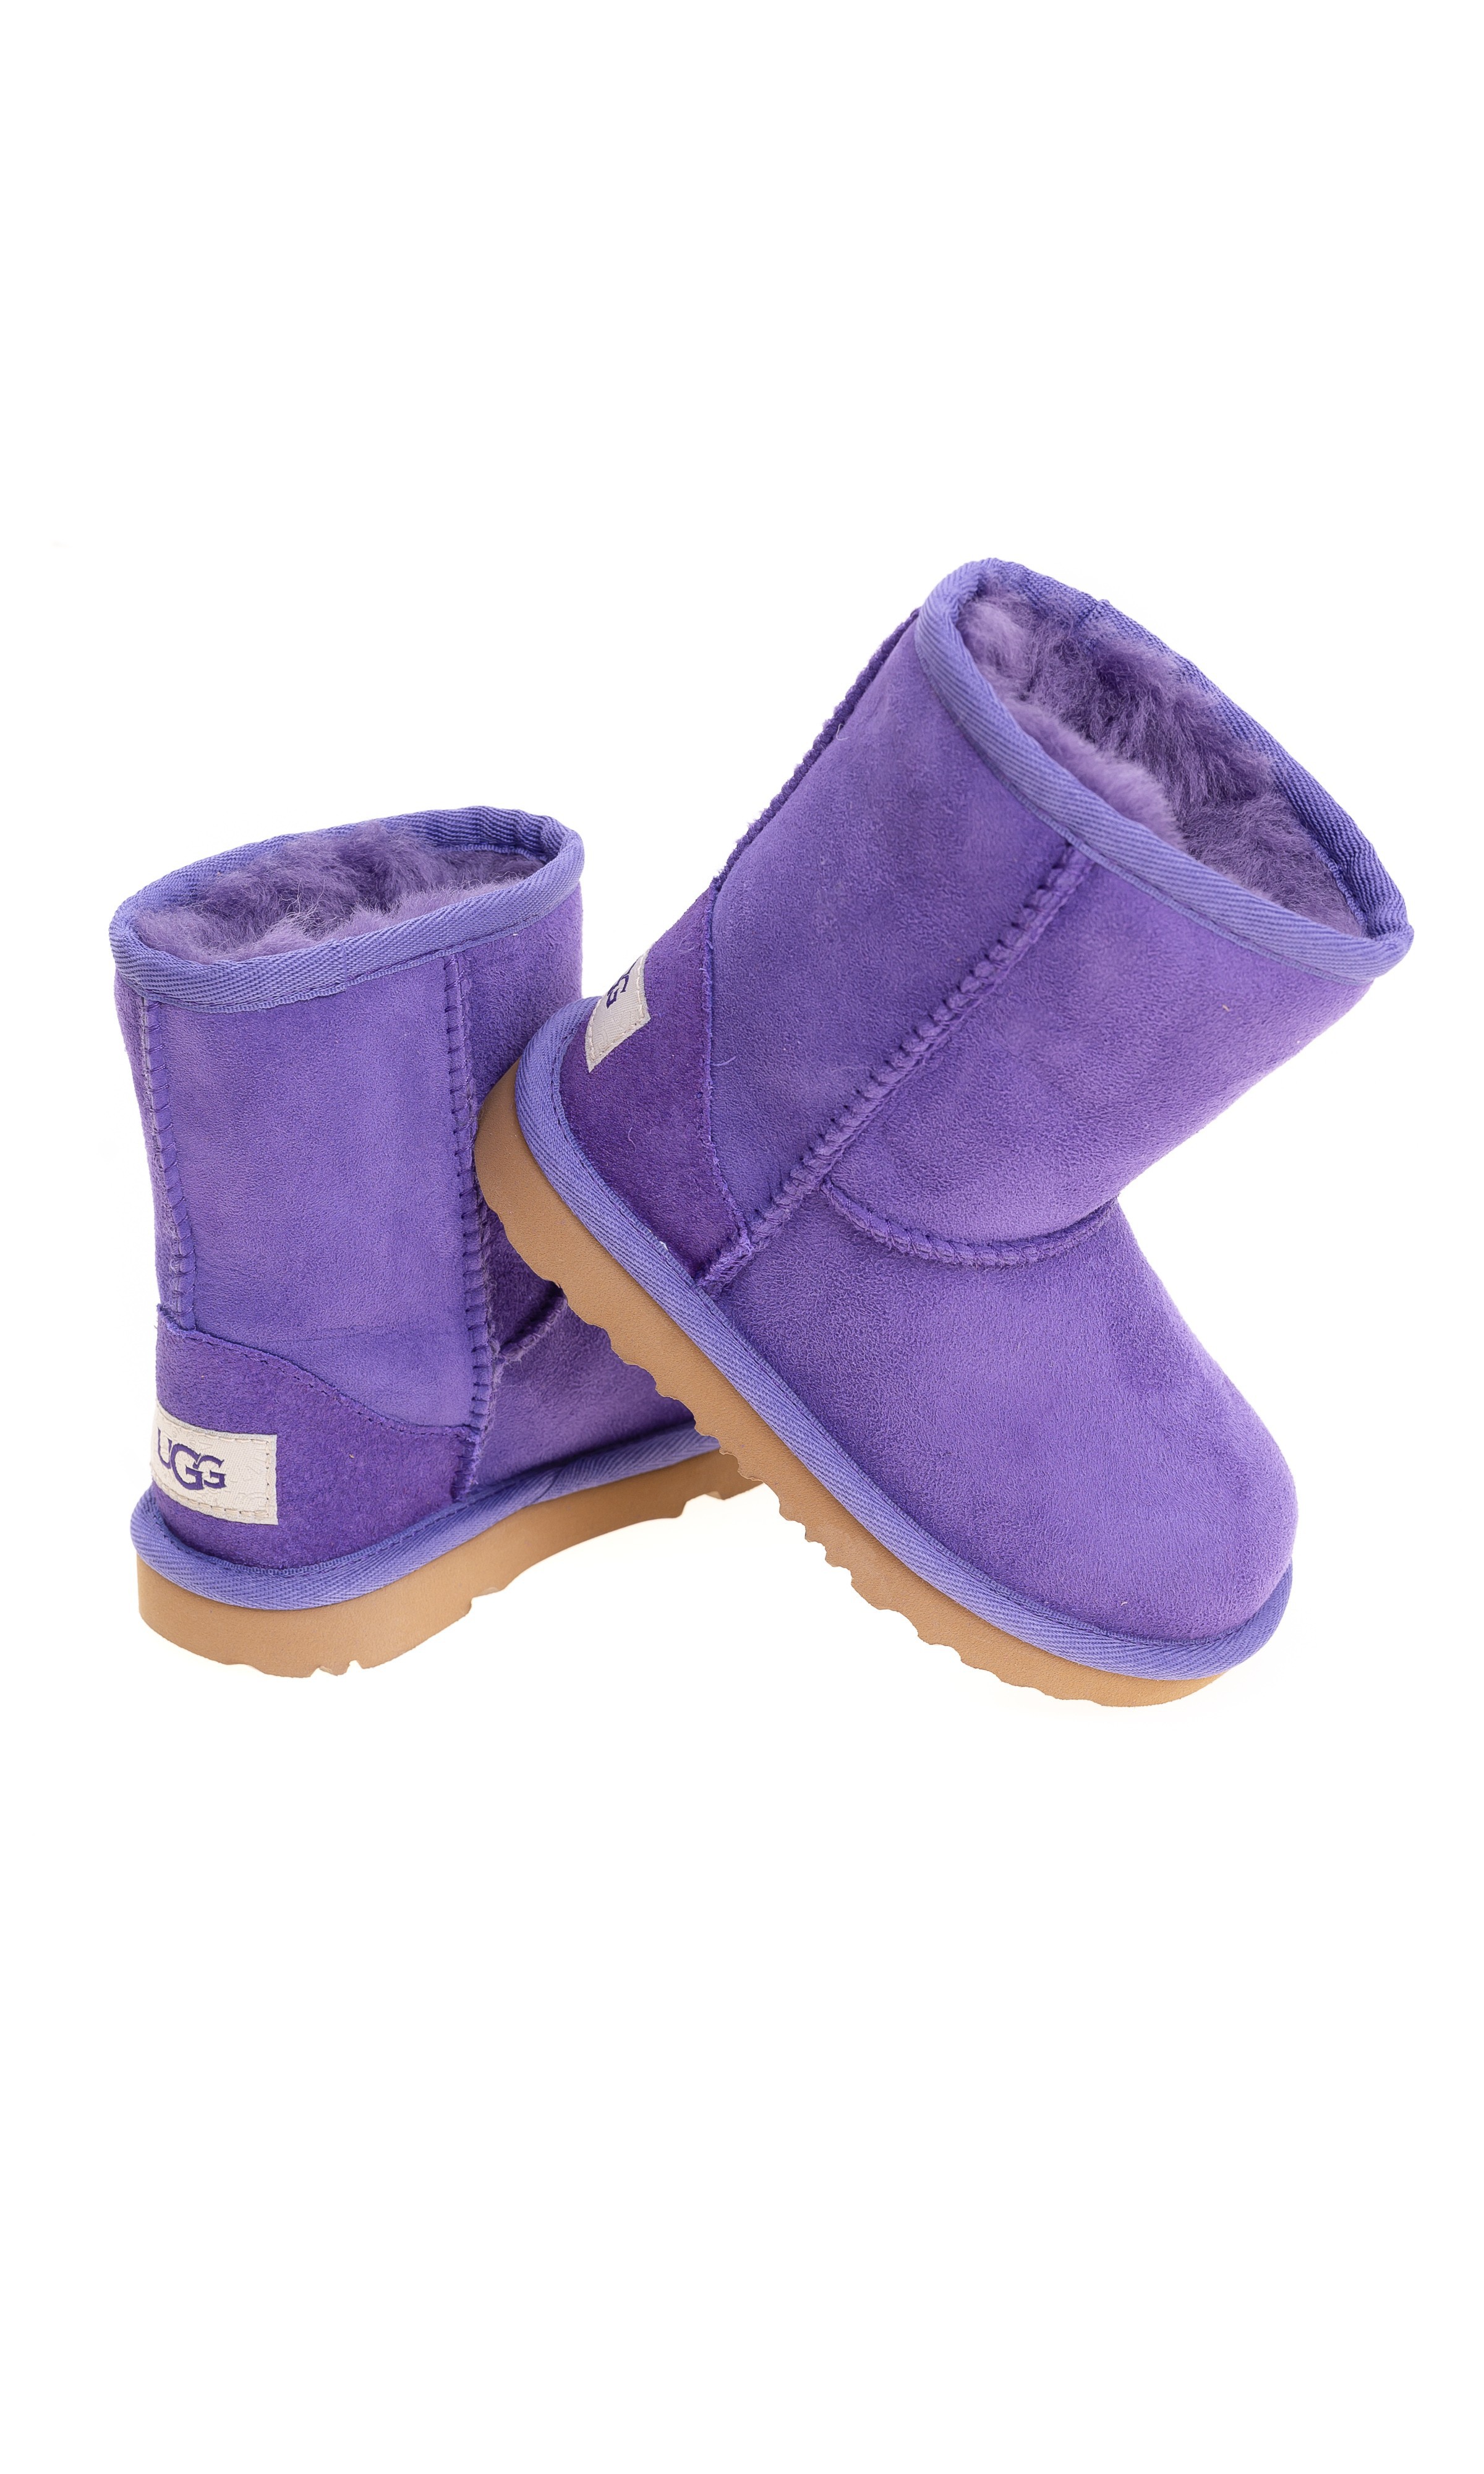 Violet half-calf boots, UGG - Celebrity 